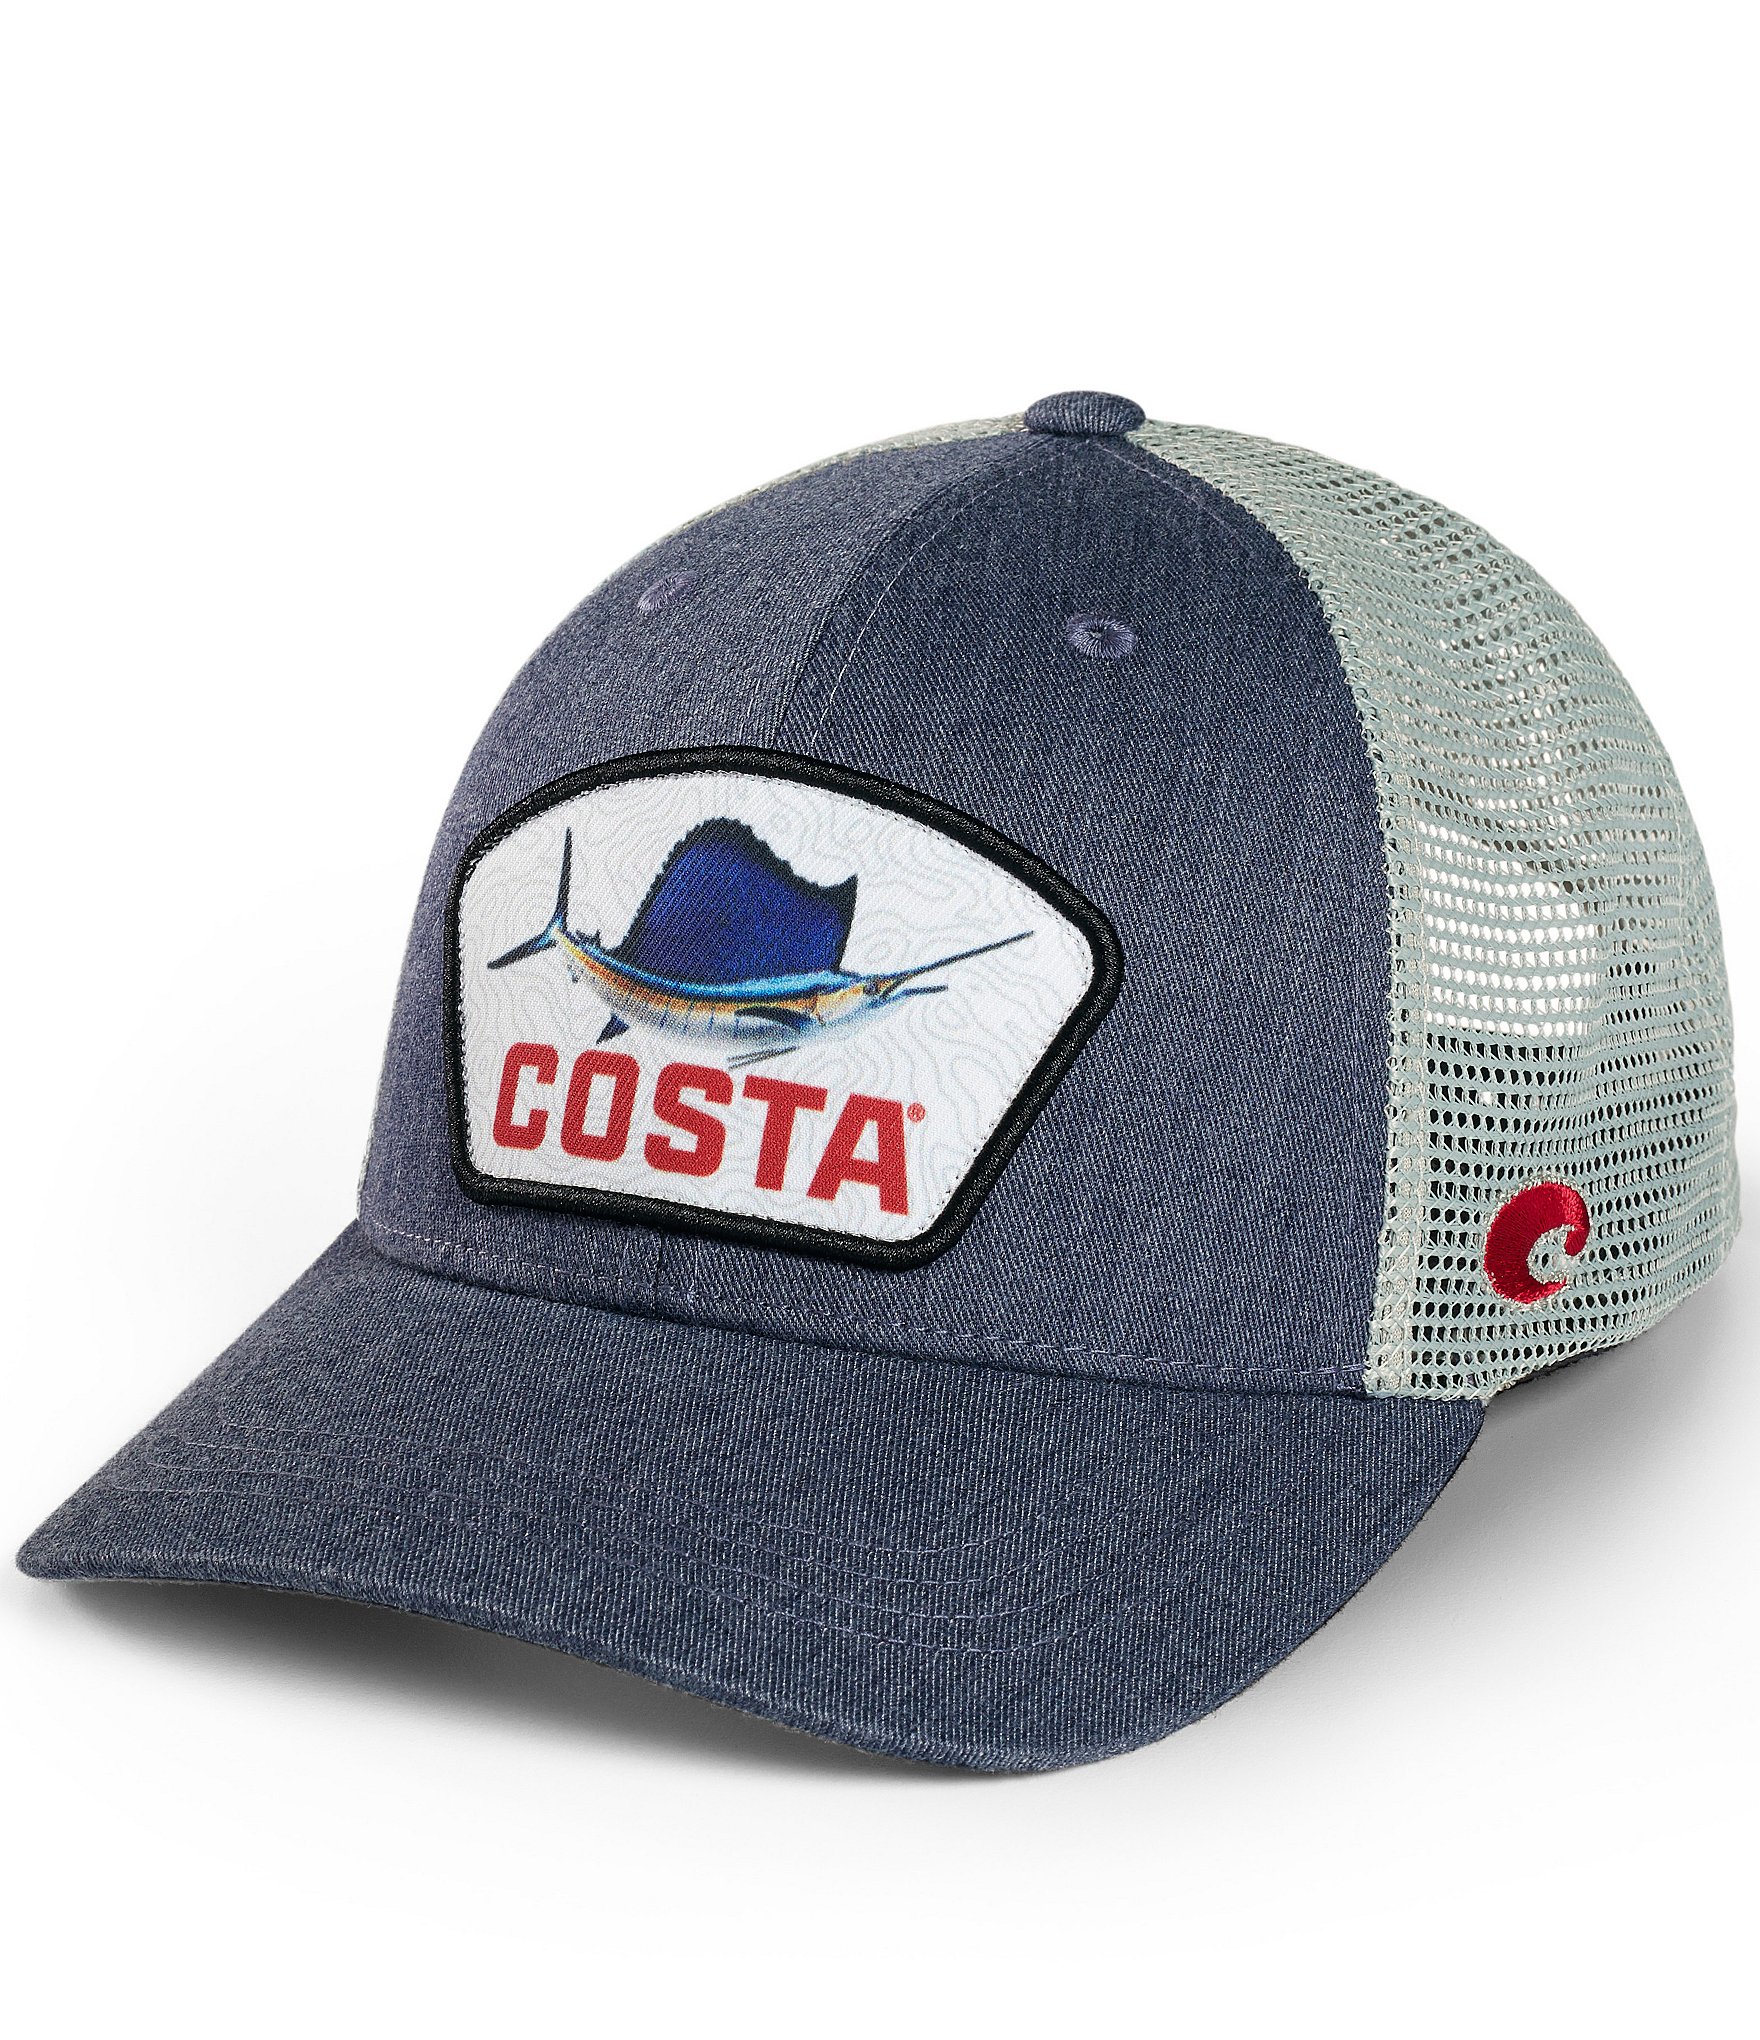 Costa Trucker Hats for Men